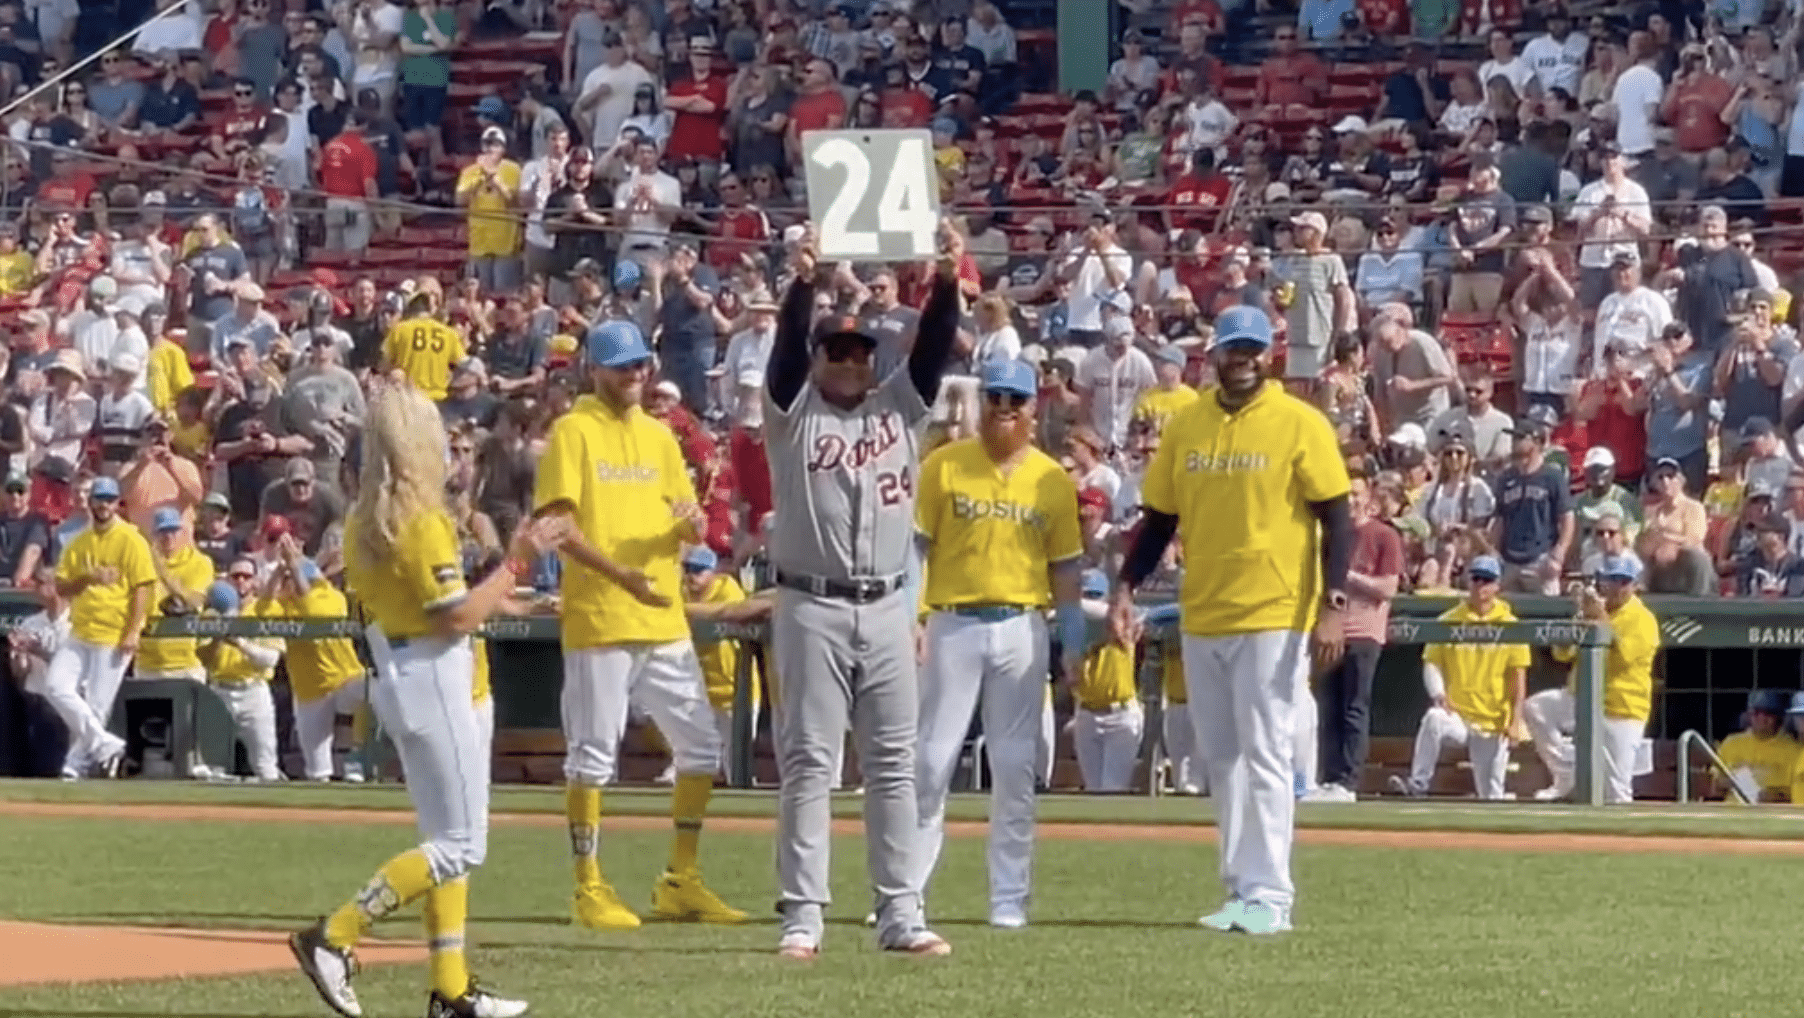 Boston Red Sox honor Miguel Cabrera